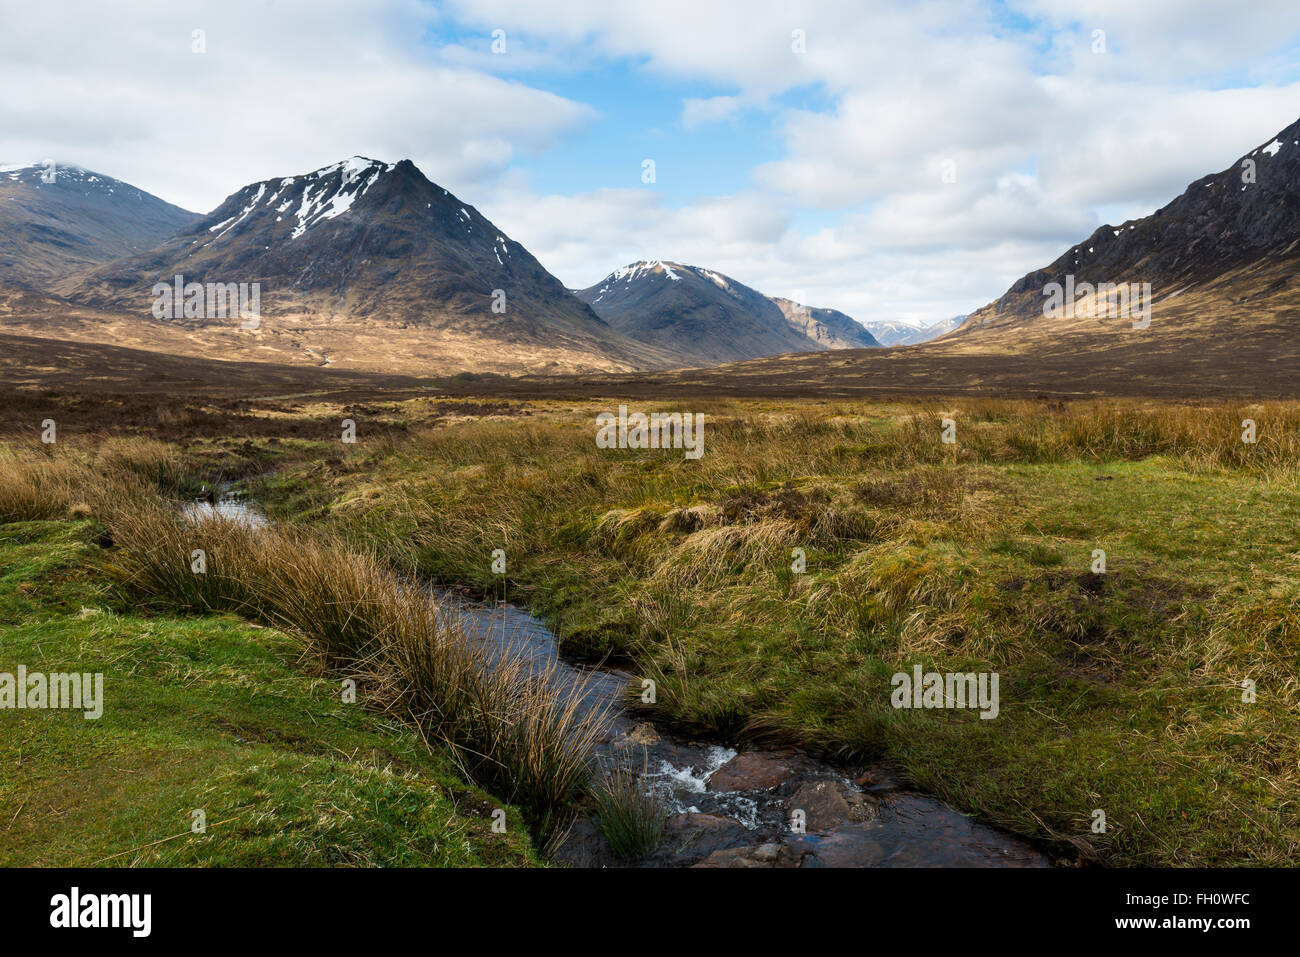 Highlands Escocesas típico de montañas, colinas, Creek, brezo y nubes en el cielo. Foto de stock